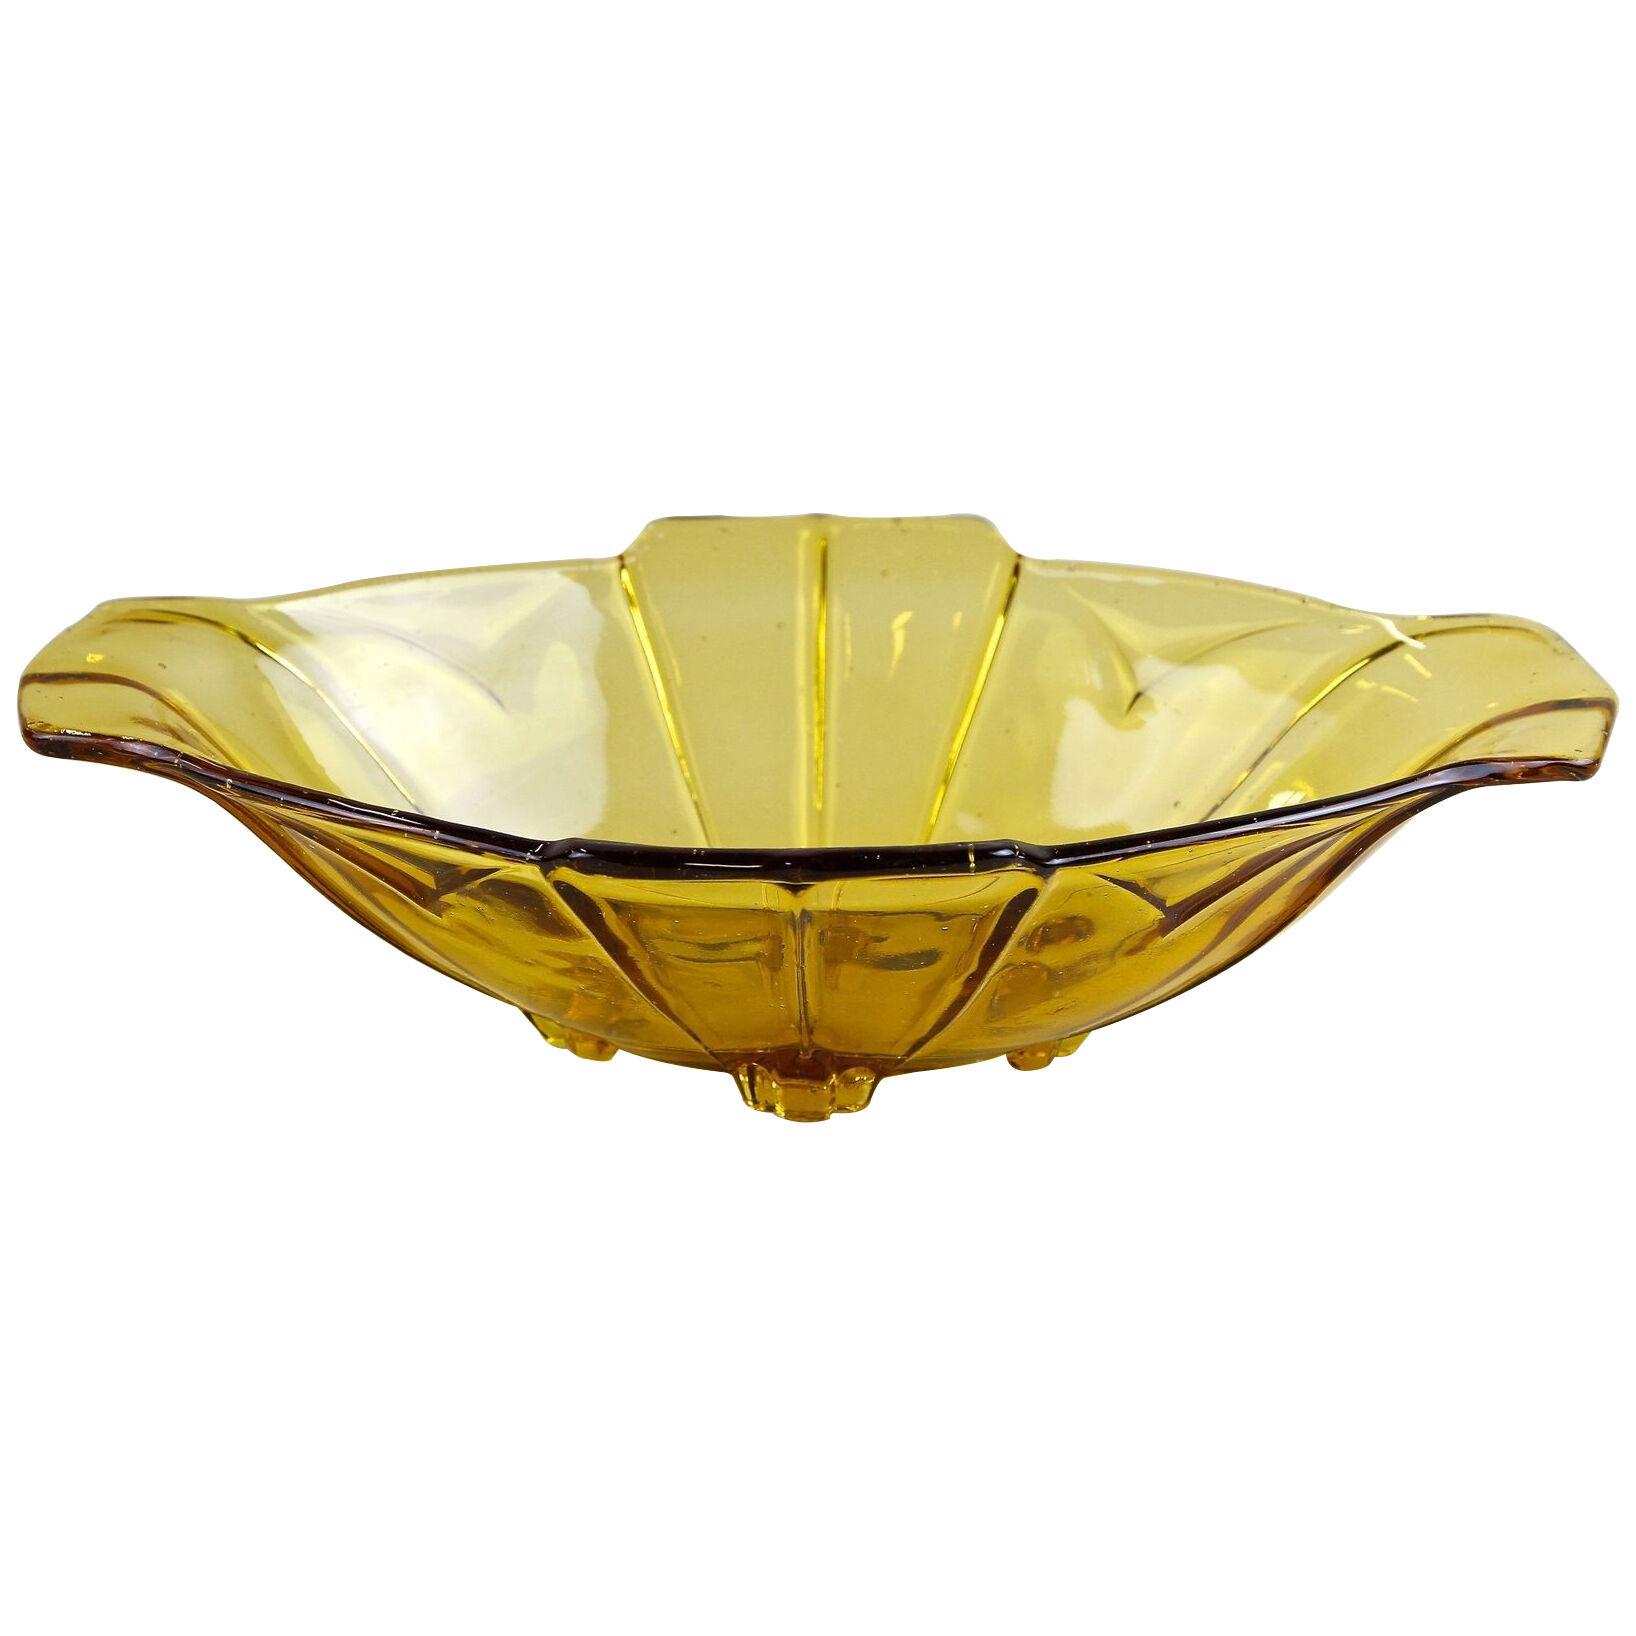 20th Century Art Deco Glass Bowl/ Jardiniere Amber Colored, Austria circa 1920